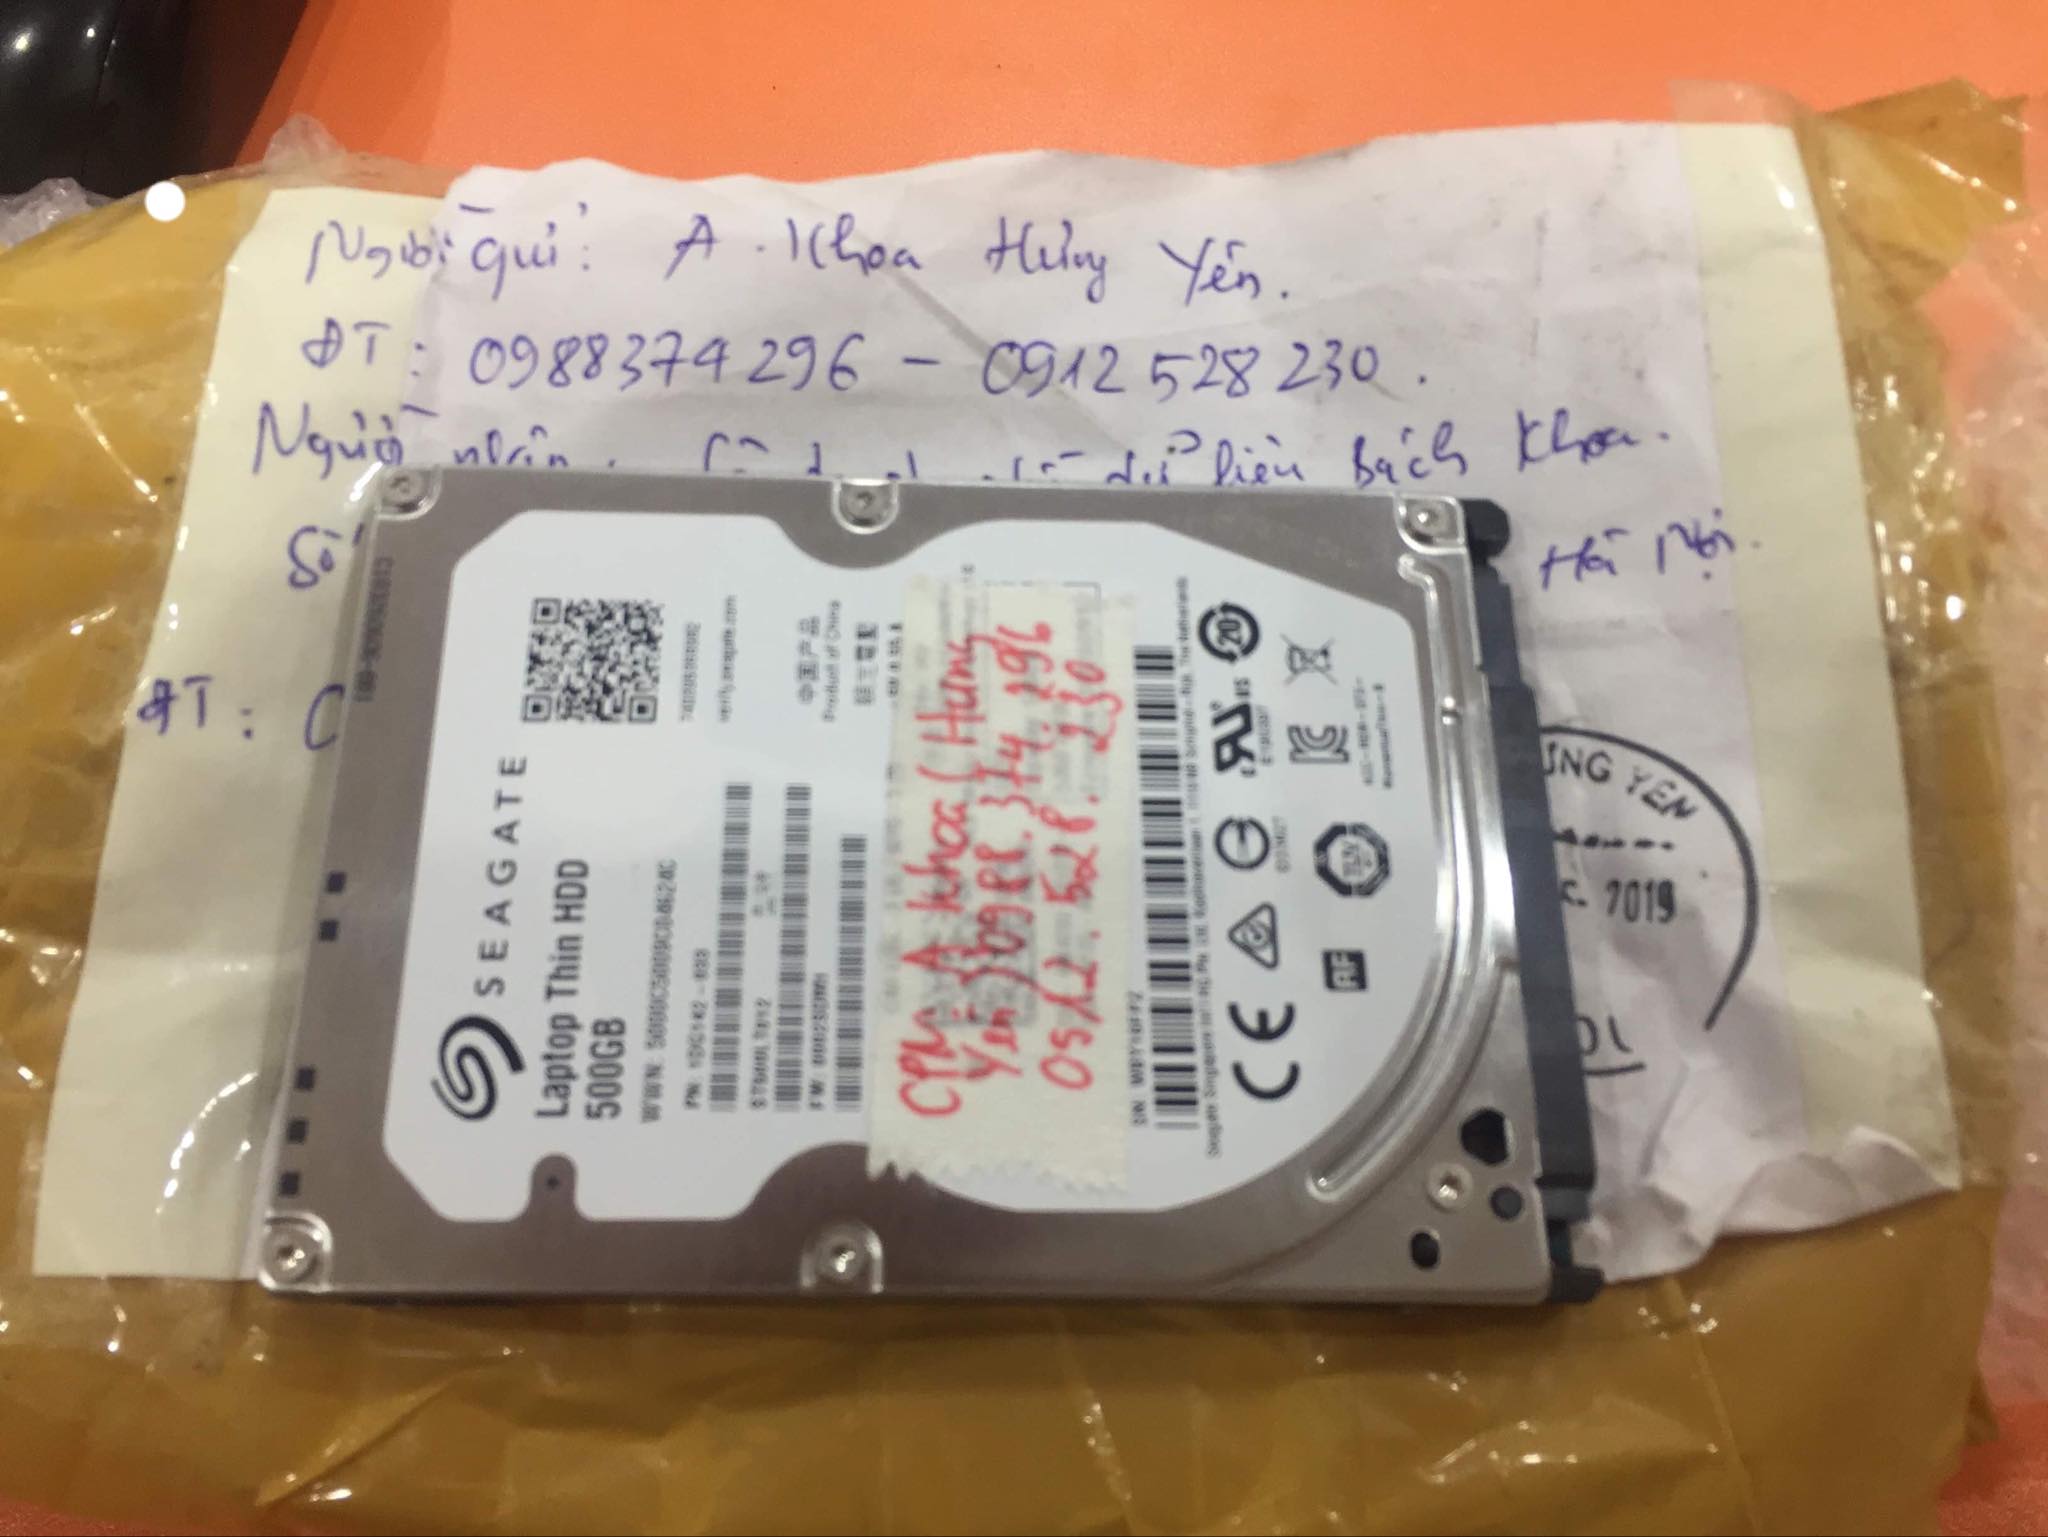 Phục hồi dữ liệu ổ cứng Seagate 500GB đầu đọc kém tại Hưng Yên 13/05/2019 - cuumaytinh